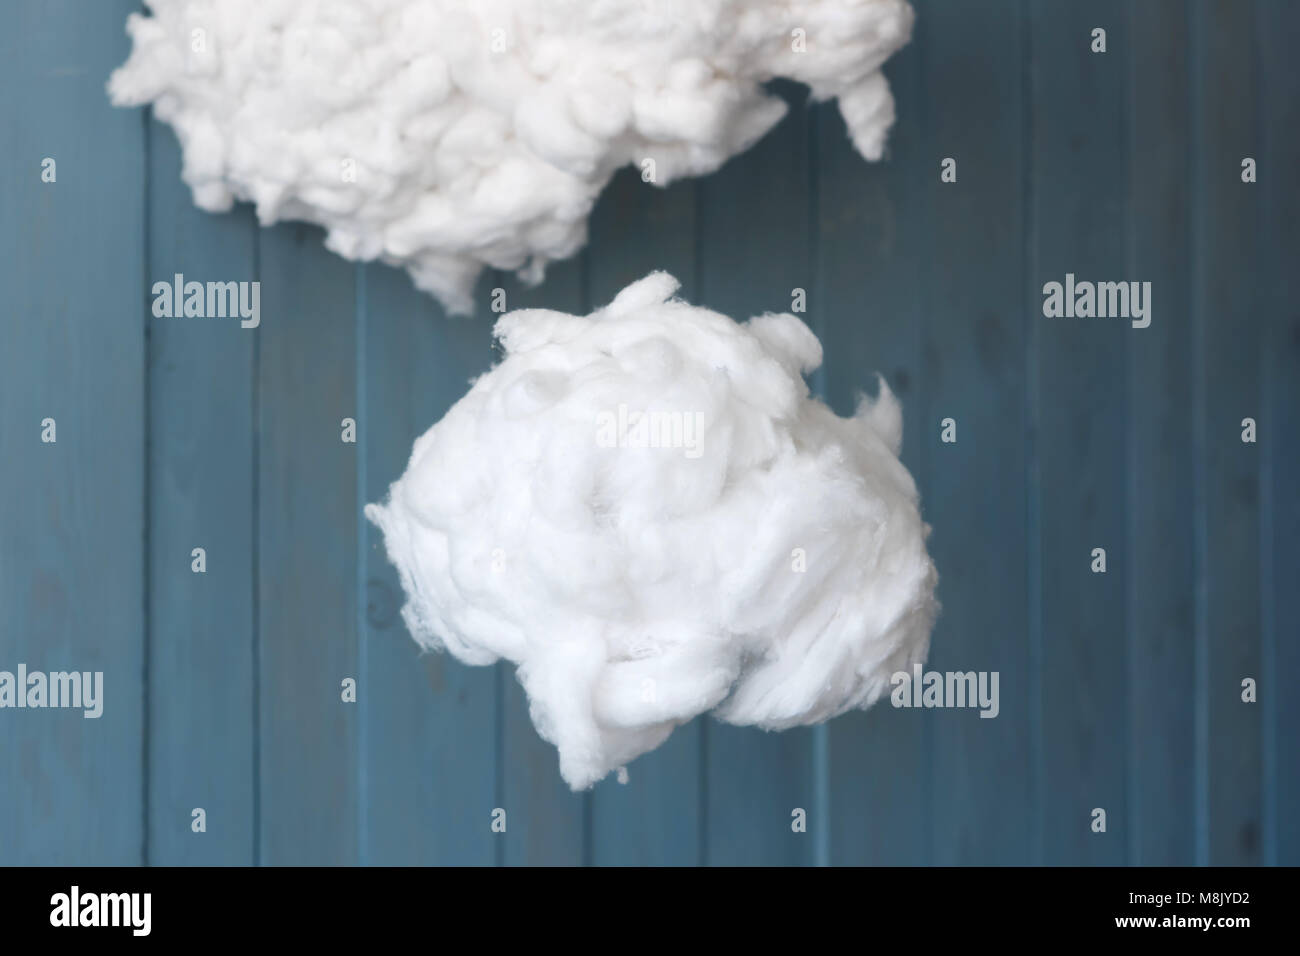 https://c8.alamy.com/compfr/m8jyd2/deux-coton-nuage-de-laine-contre-fond-bleu-m8jyd2.jpg